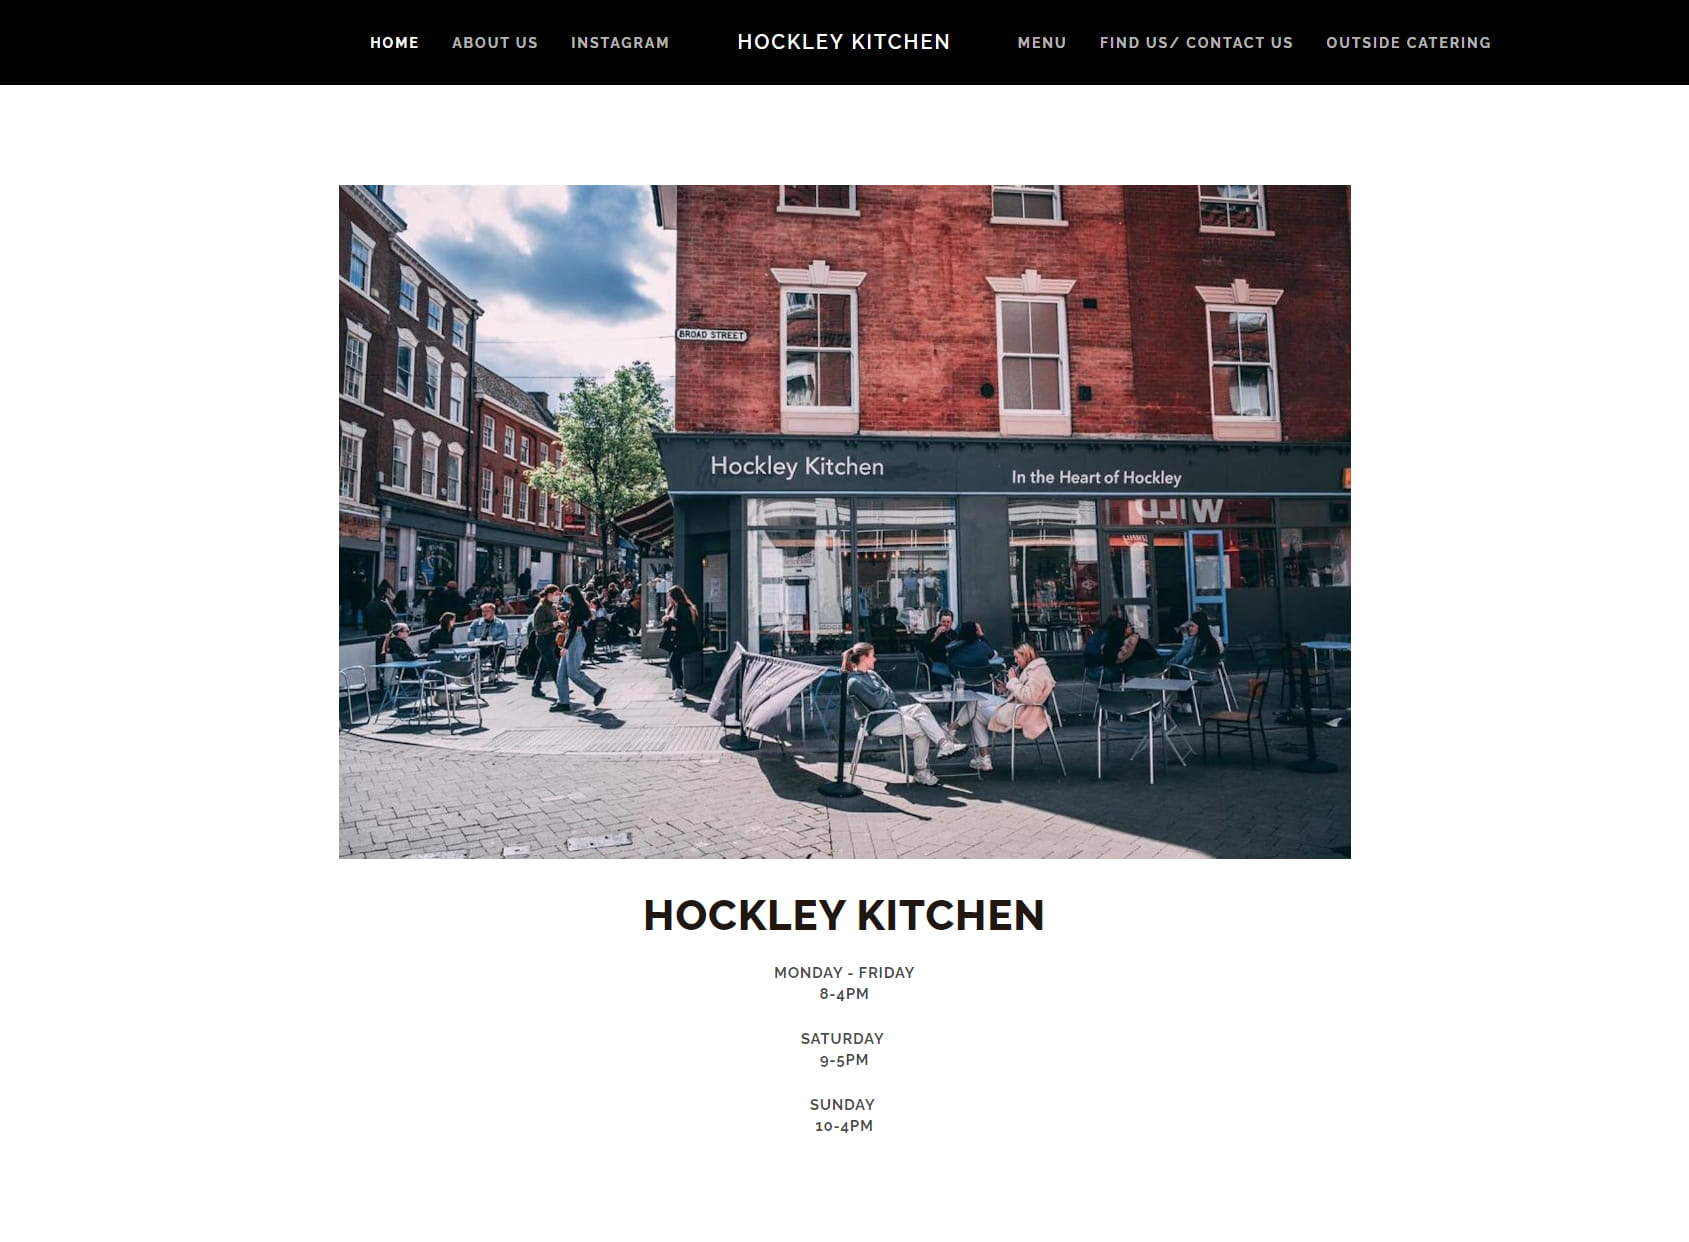 Hockley Kitchen